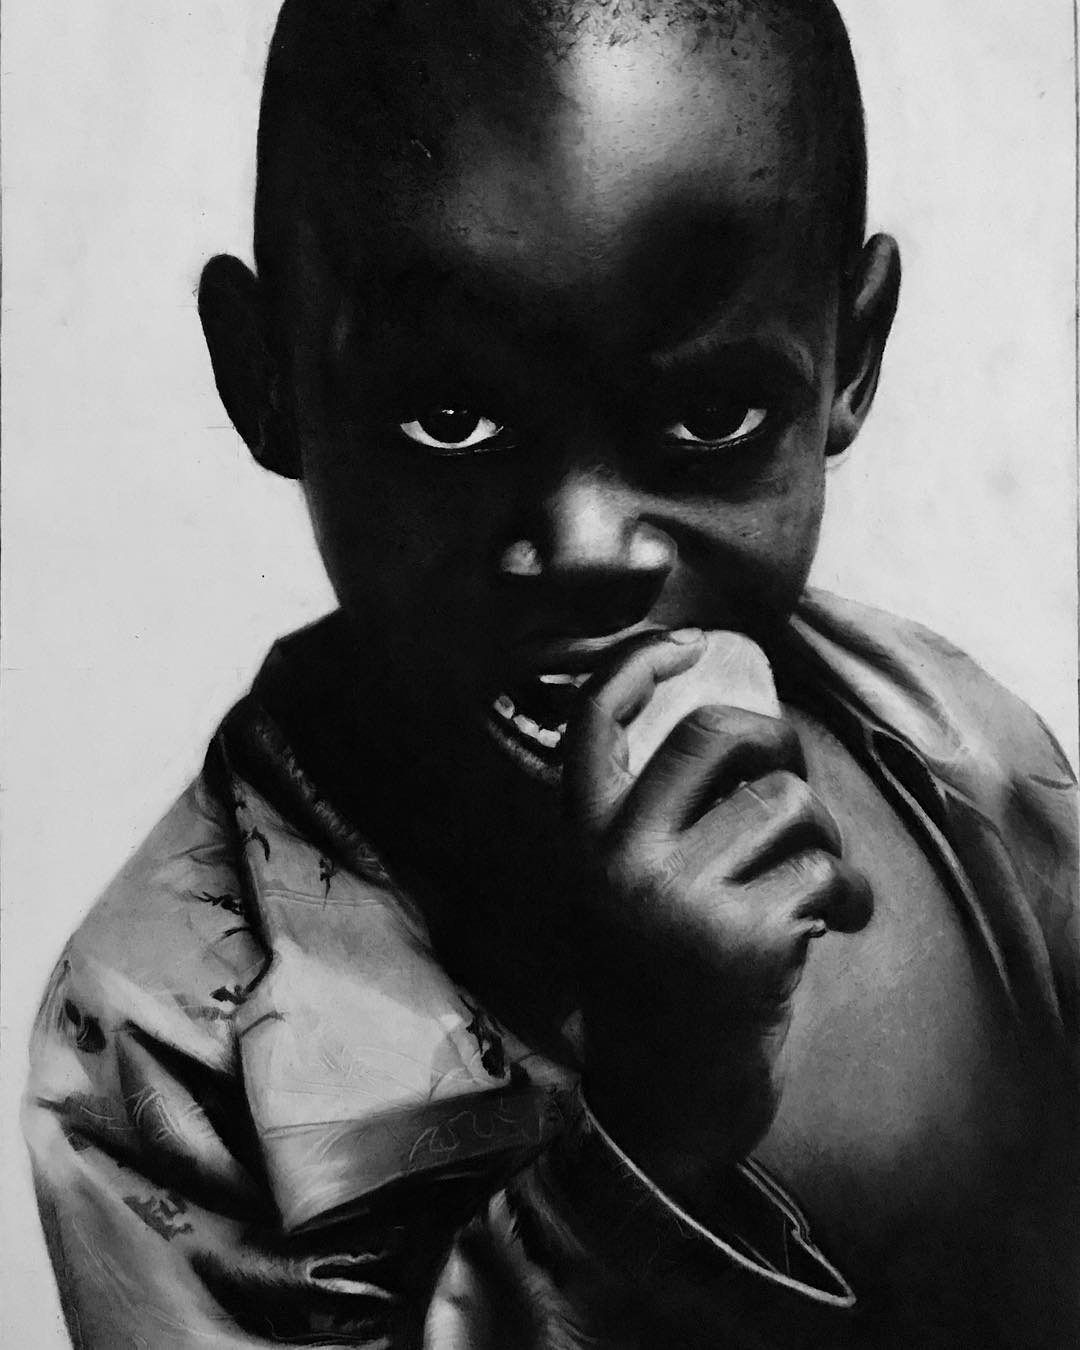 African Child by Emmanuel Kolawole